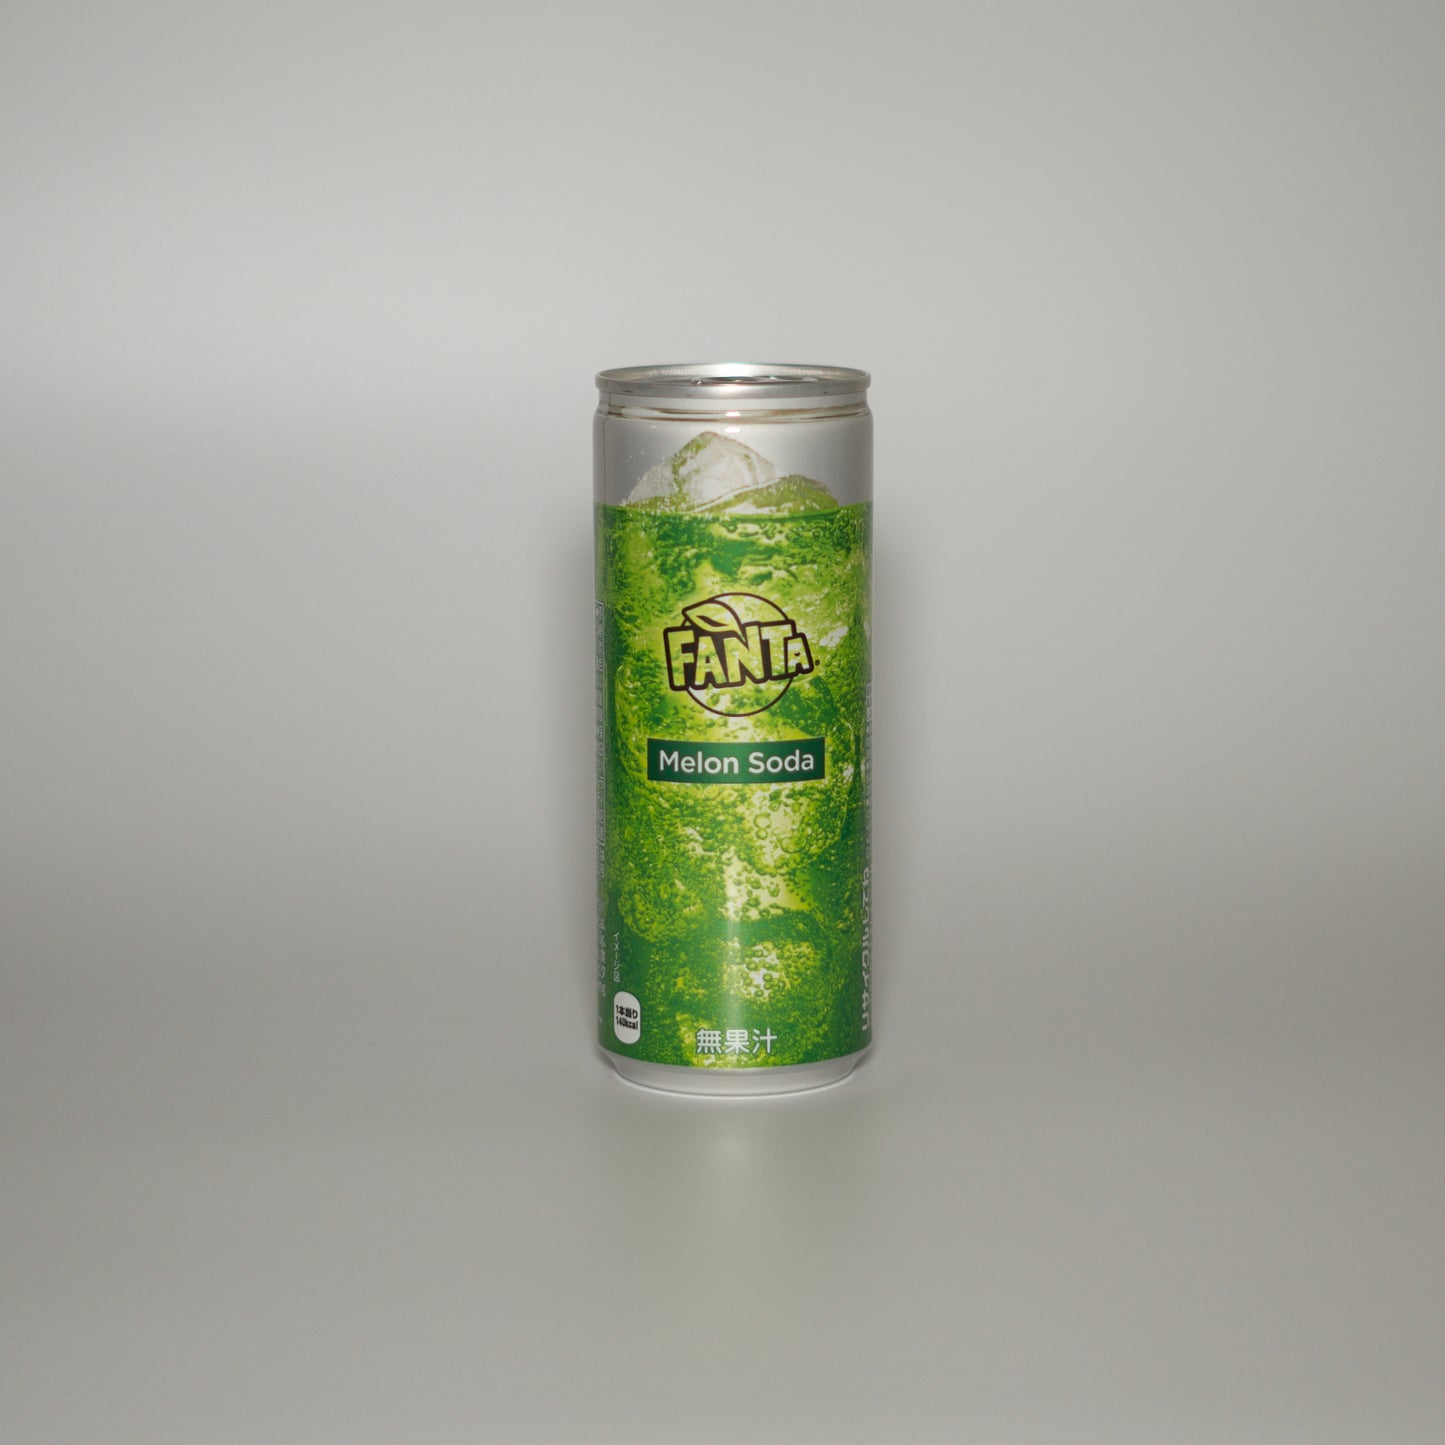 Expired - Fanta Melon Soda 250ml